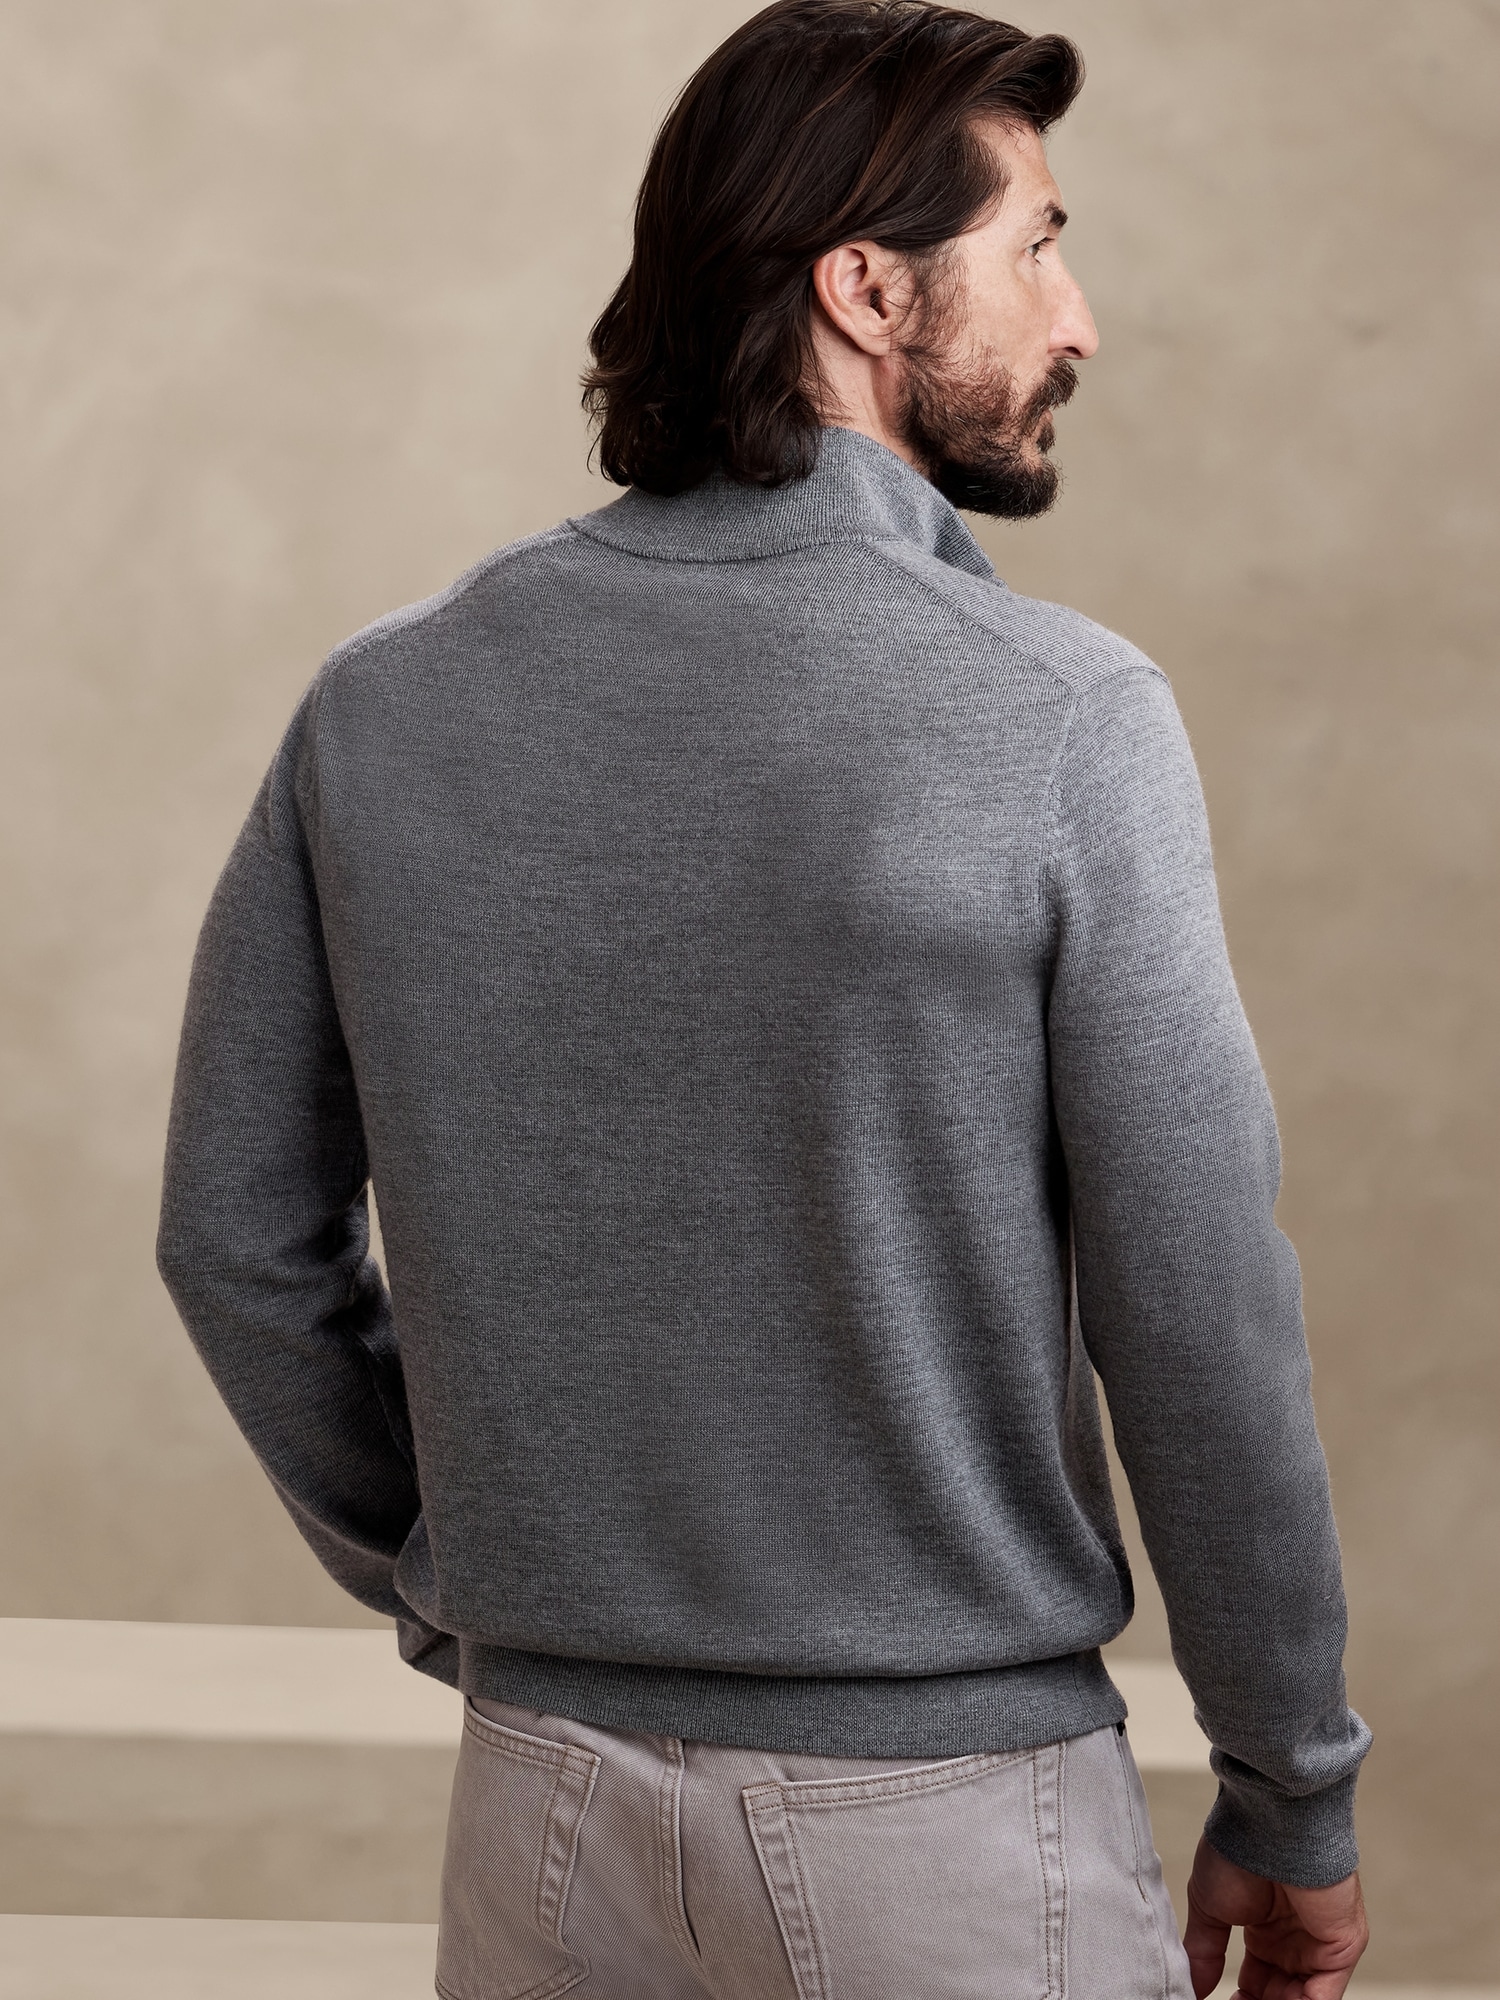 Raoul Italian Merino Sweater